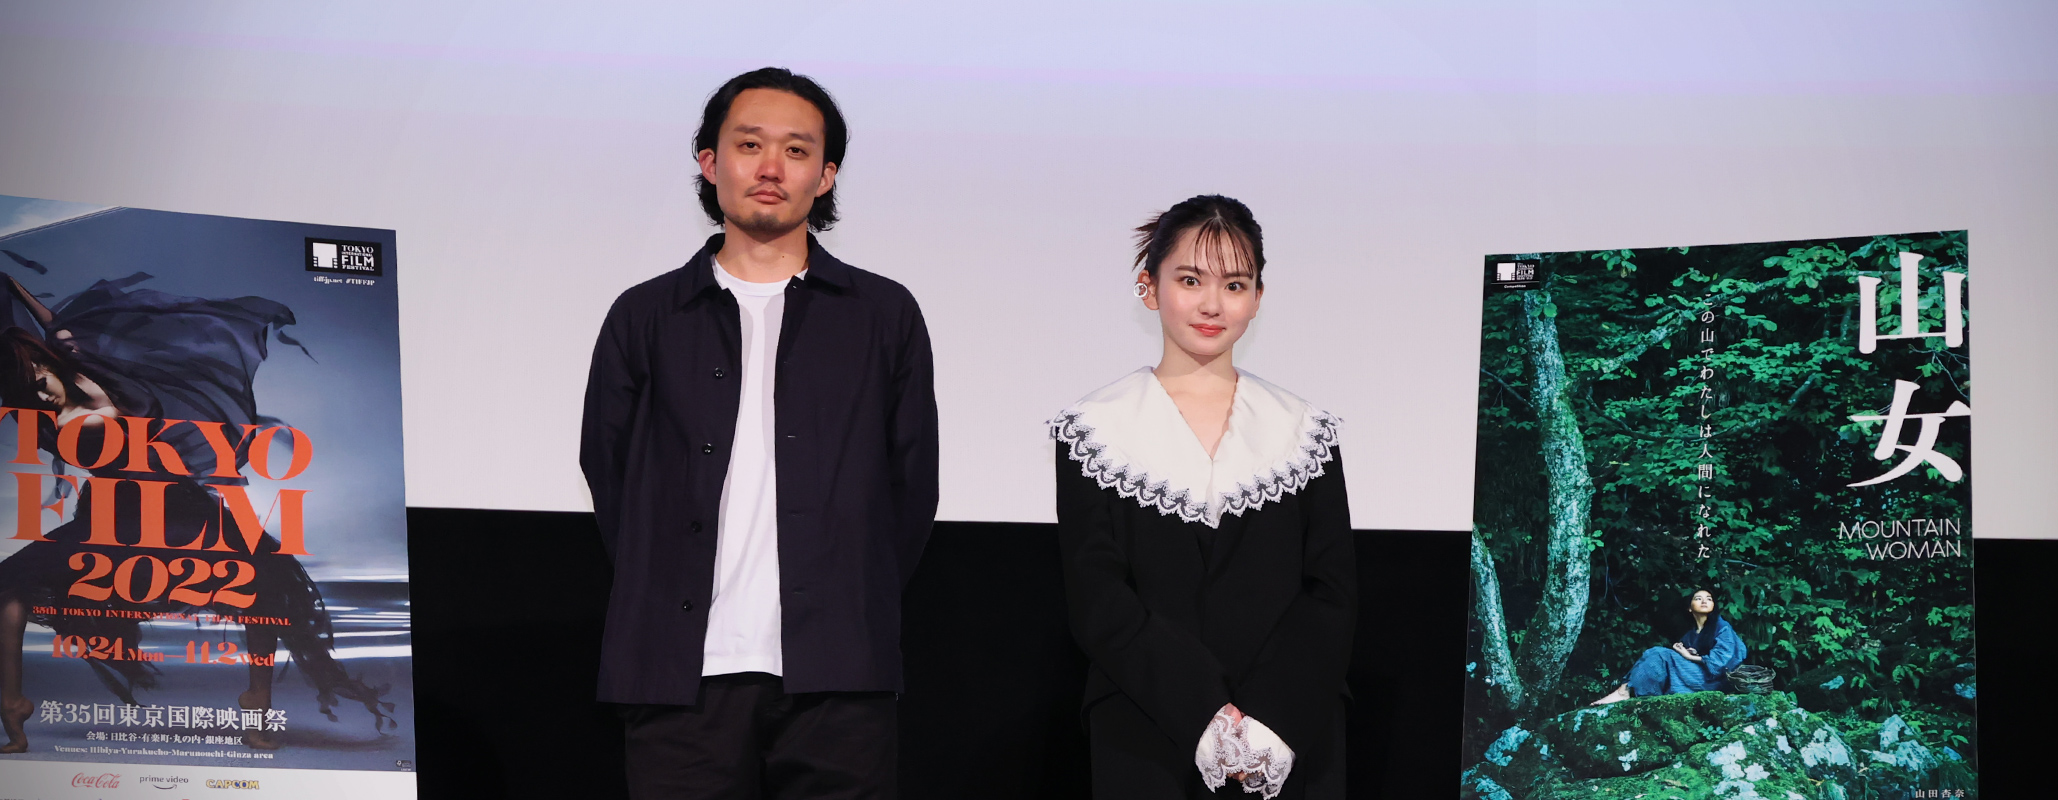 Mountain Woman Q&A: Fukunaga Takeshi (Director), Yamada Anna (Cast)